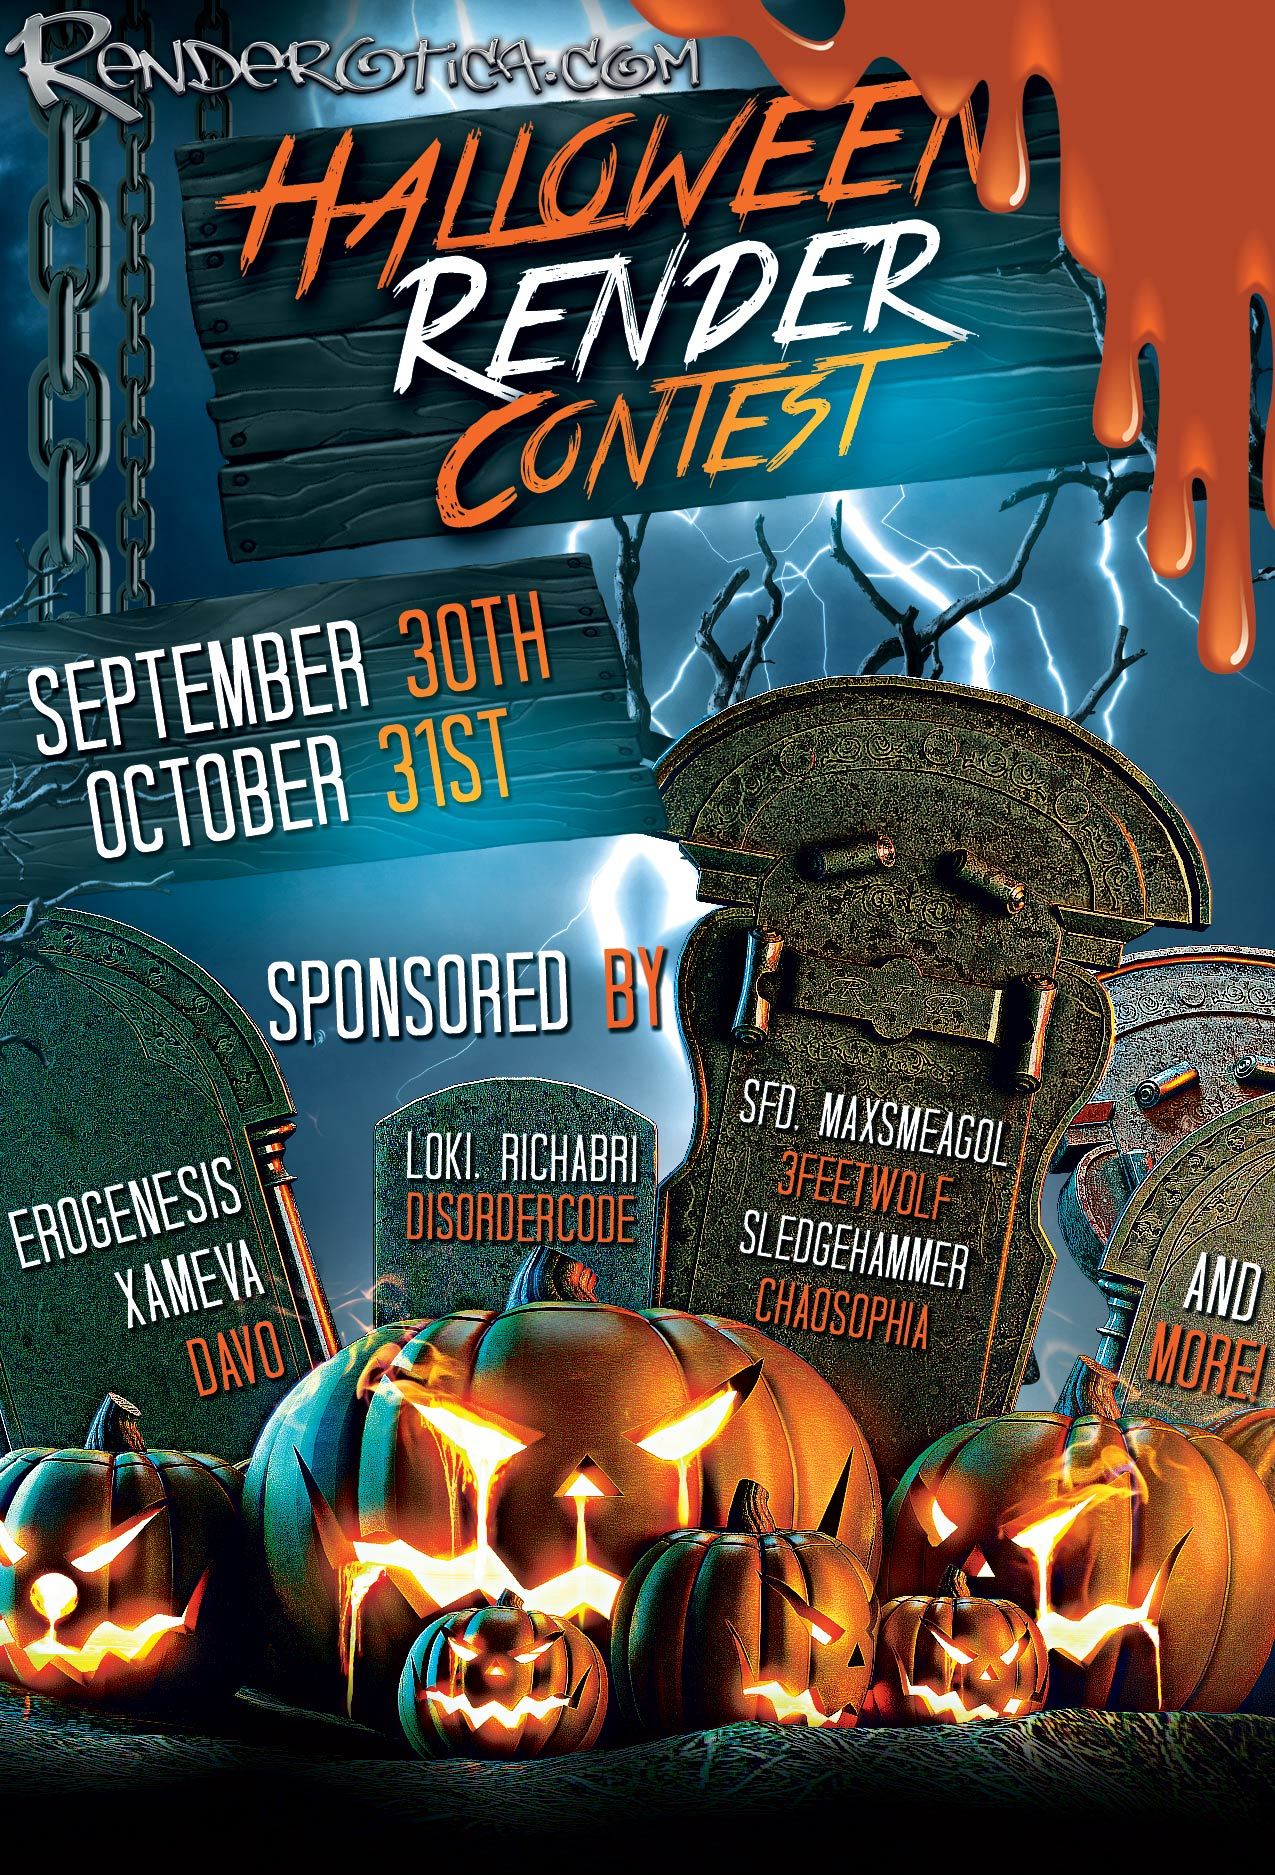 Renderotica’s 2016 Halloween Render Contest!9-30-16 till 10-31-16  full details